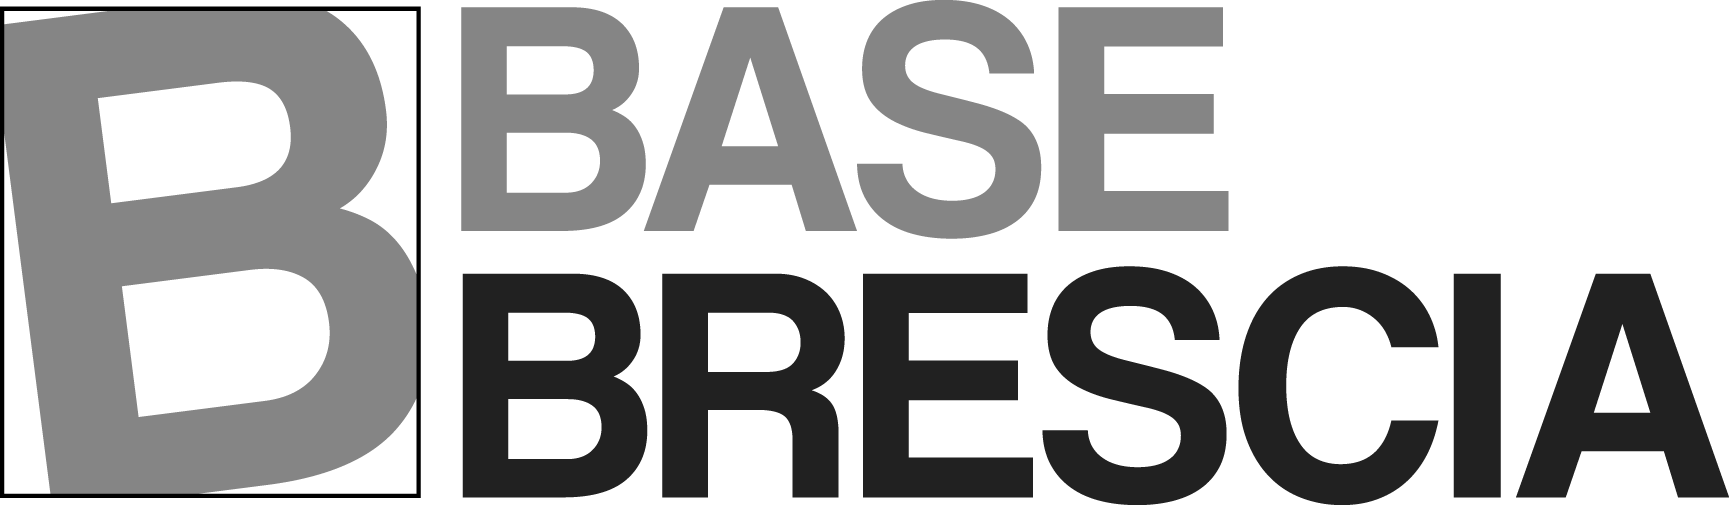 Base Brescia - Base Brescia - Noleggio auto a lungo termine